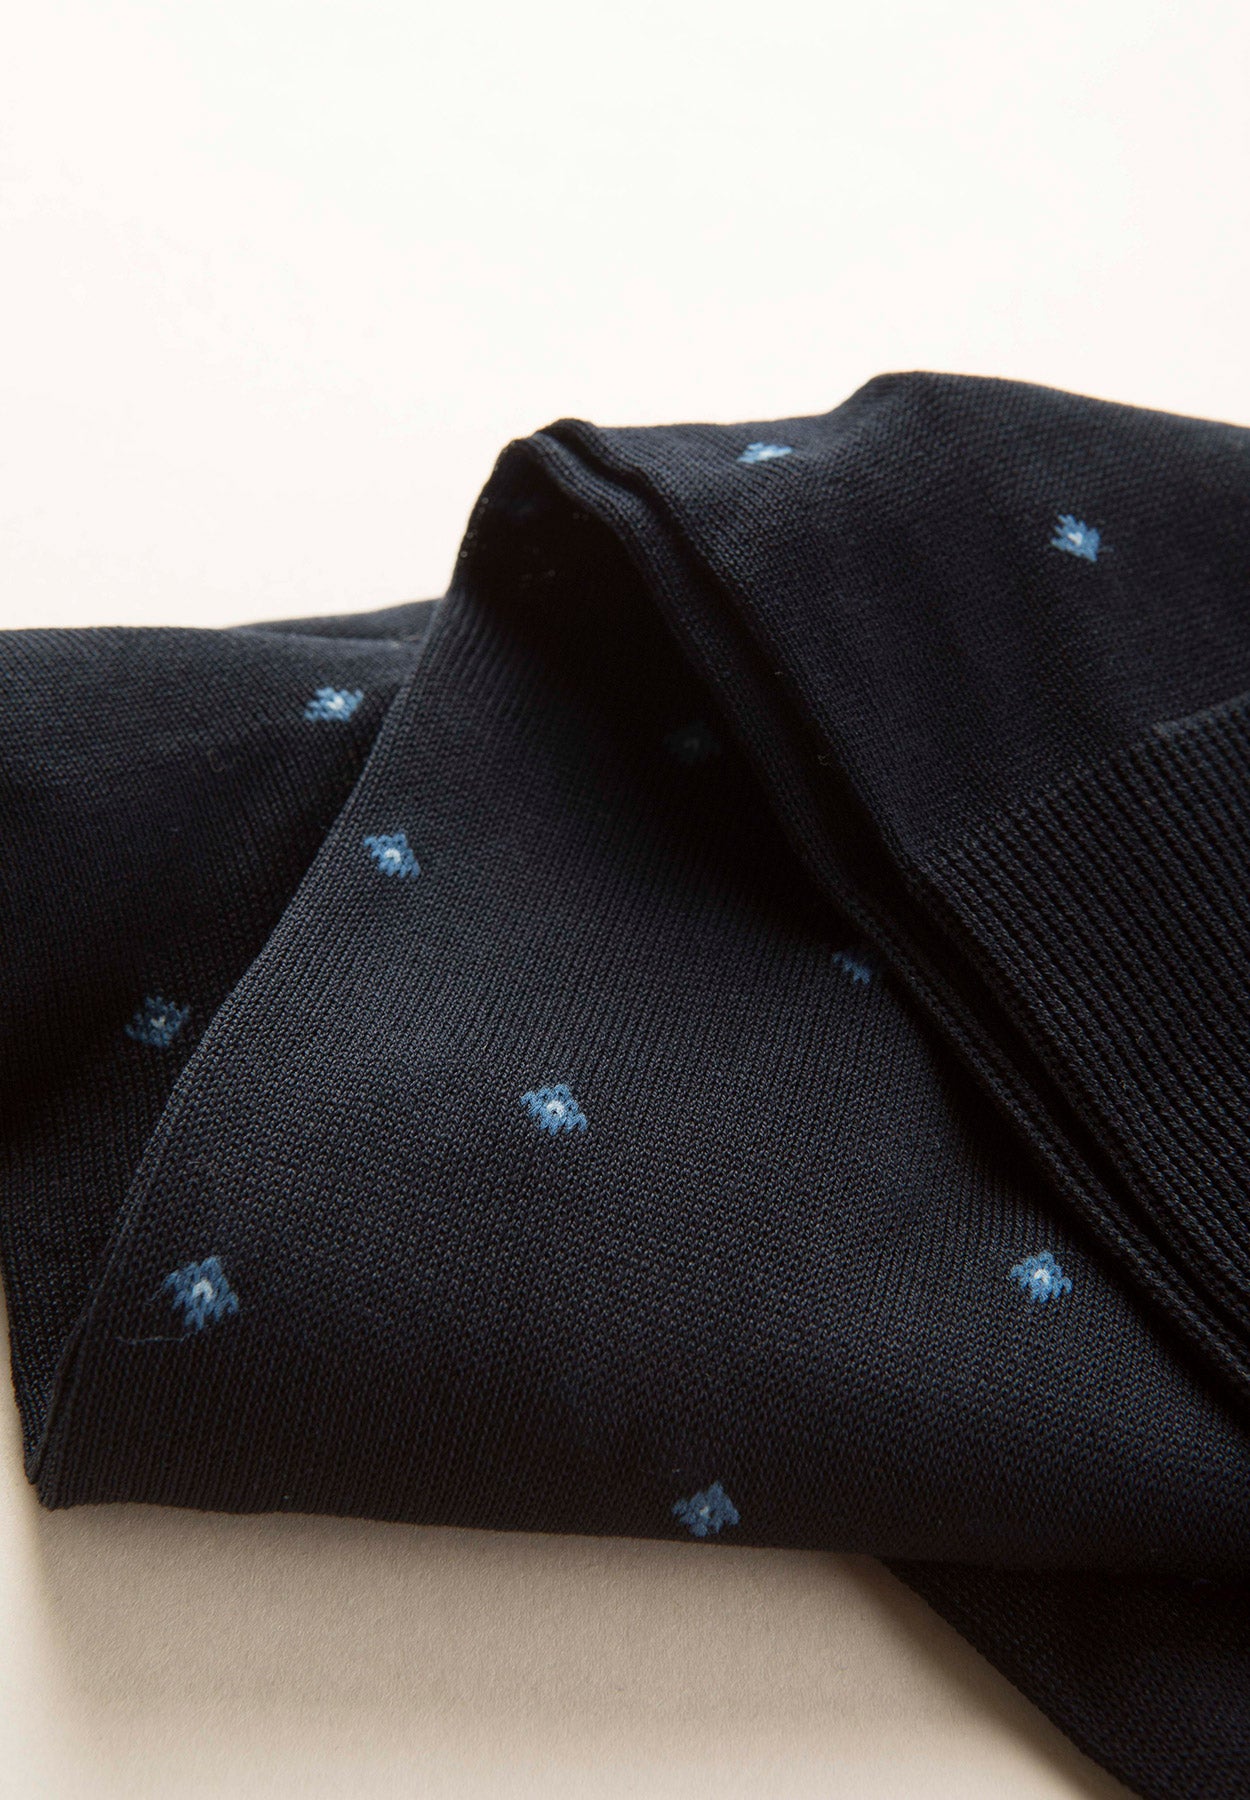 Blue lisle socks with diamond pattern